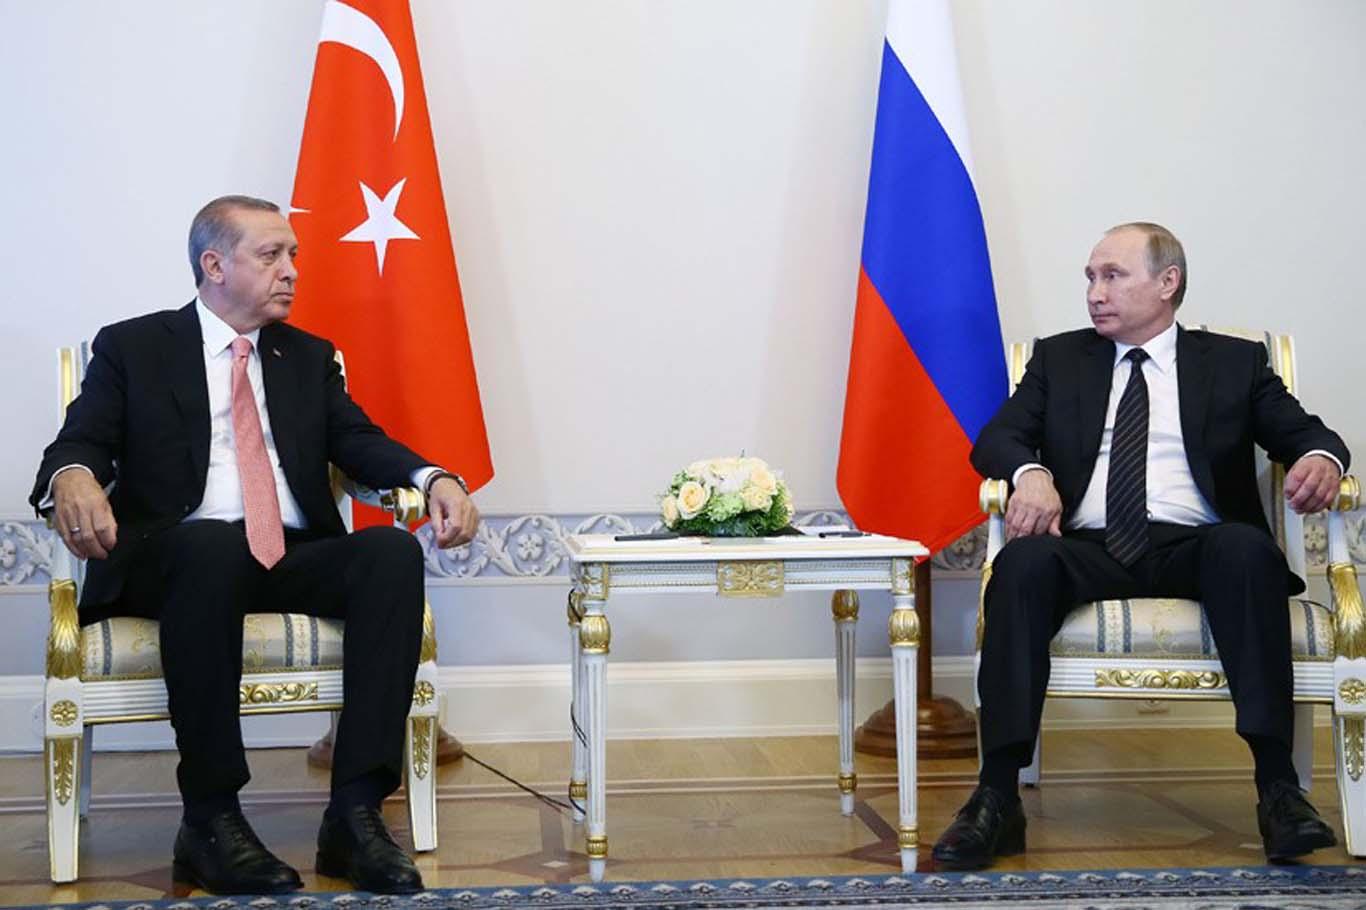 Erdoğan ile Putin bir araya geldi